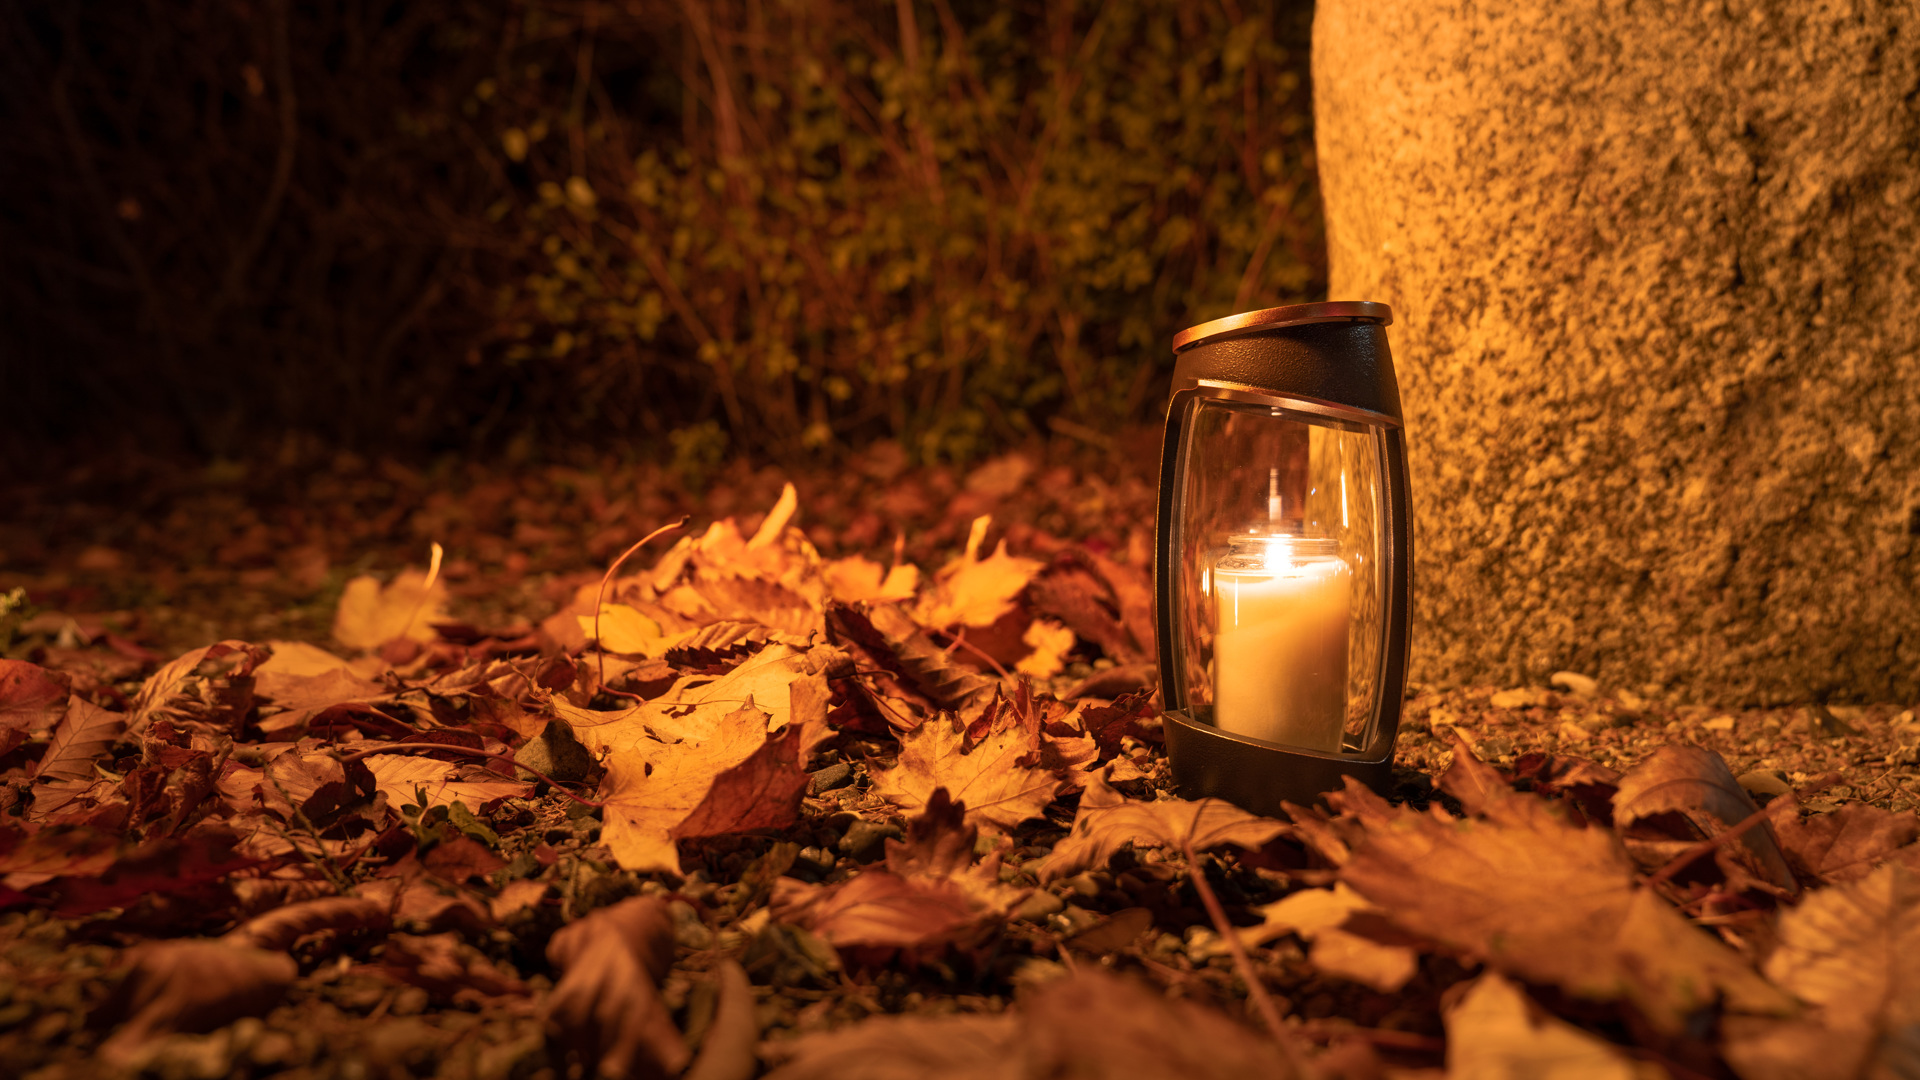 Lanterne til gravsted | mulighederne med smukke lanterner